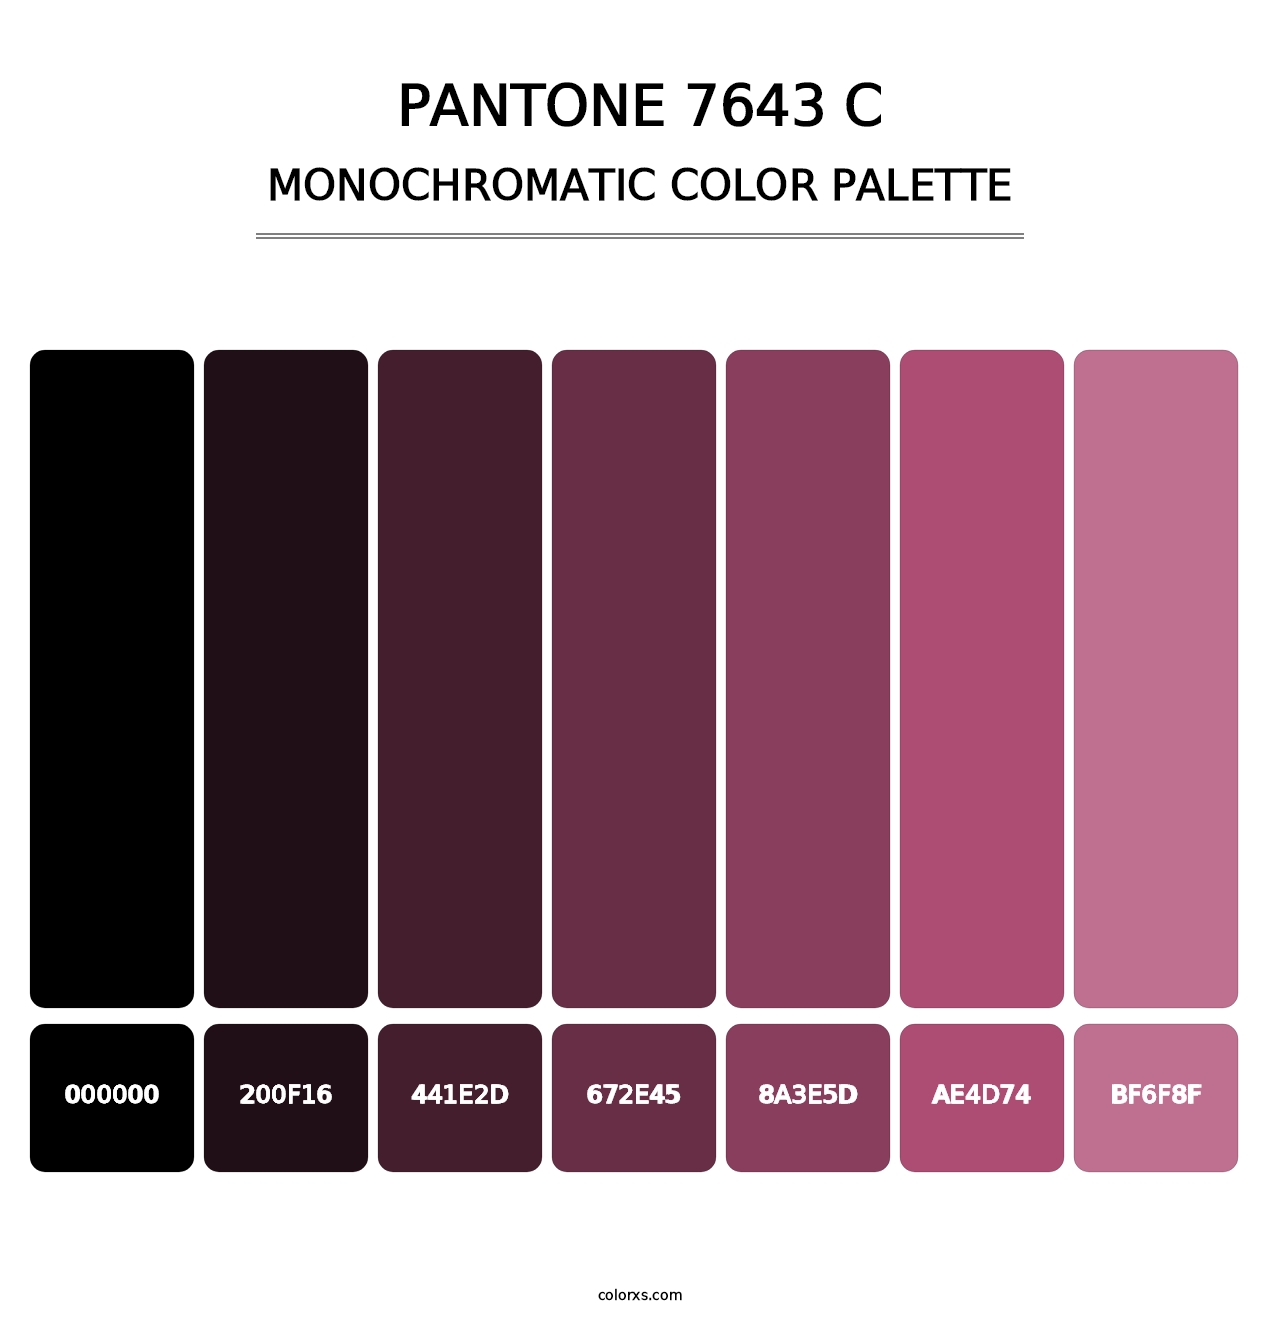 PANTONE 7643 C - Monochromatic Color Palette